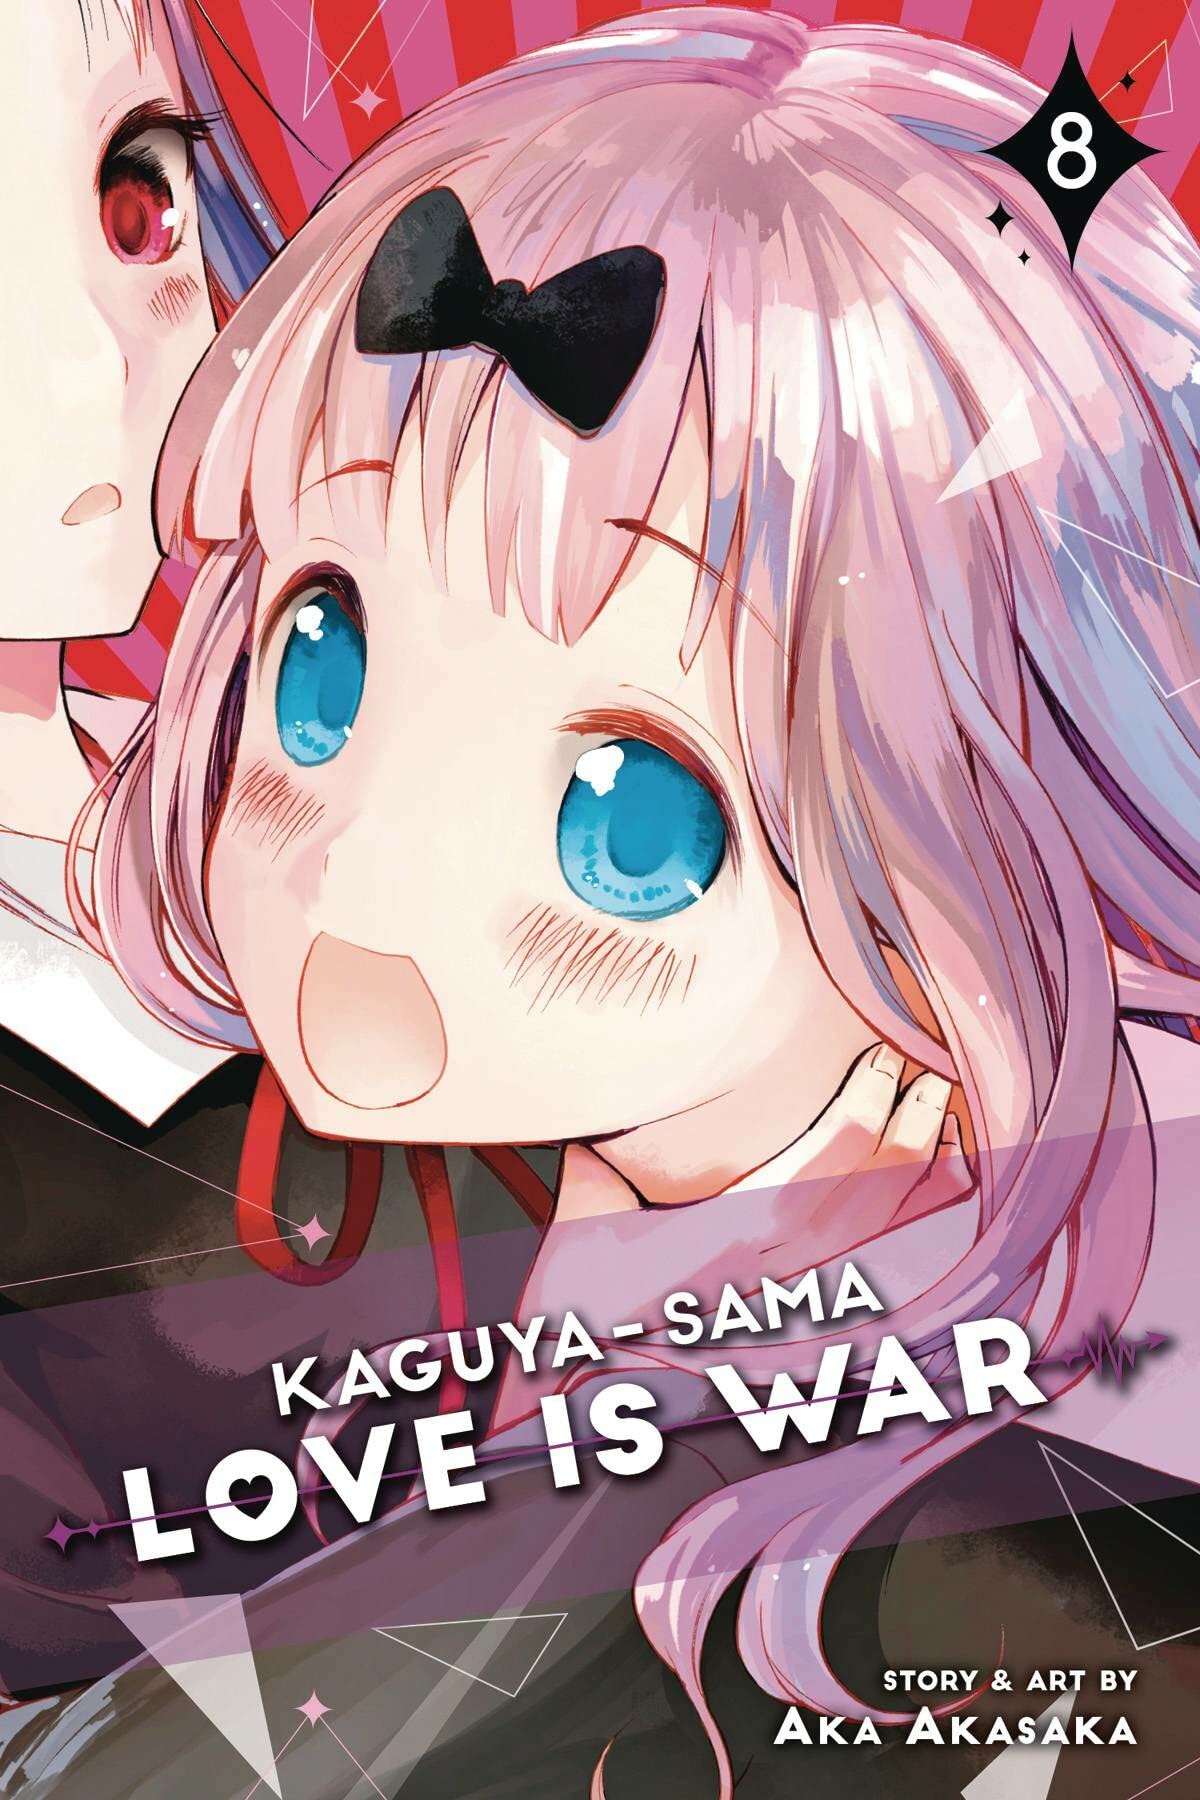 Mua Kaguya sama Love Is War Vol trên Amazon Mỹ chính hãng Fado